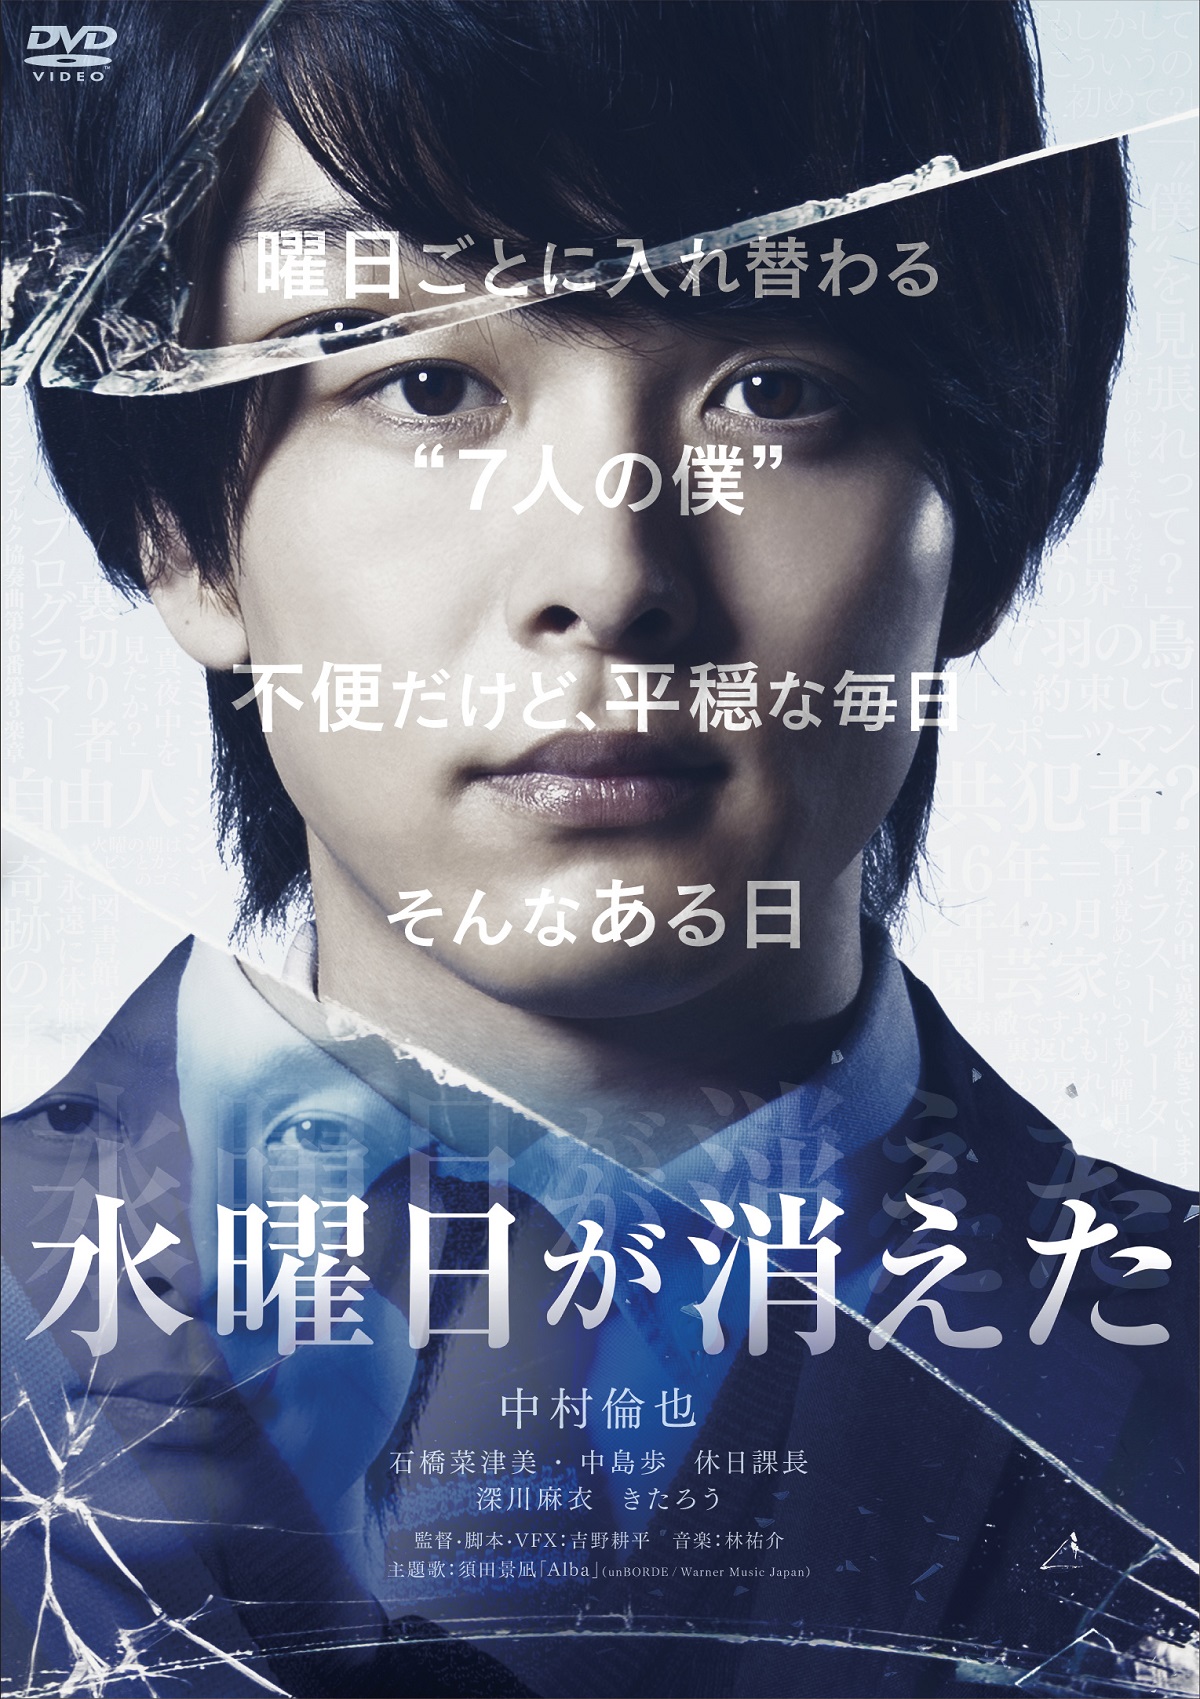 中村倫也が1人7役 水曜日が消えた blu ray dvd発売決定 映画スクエア